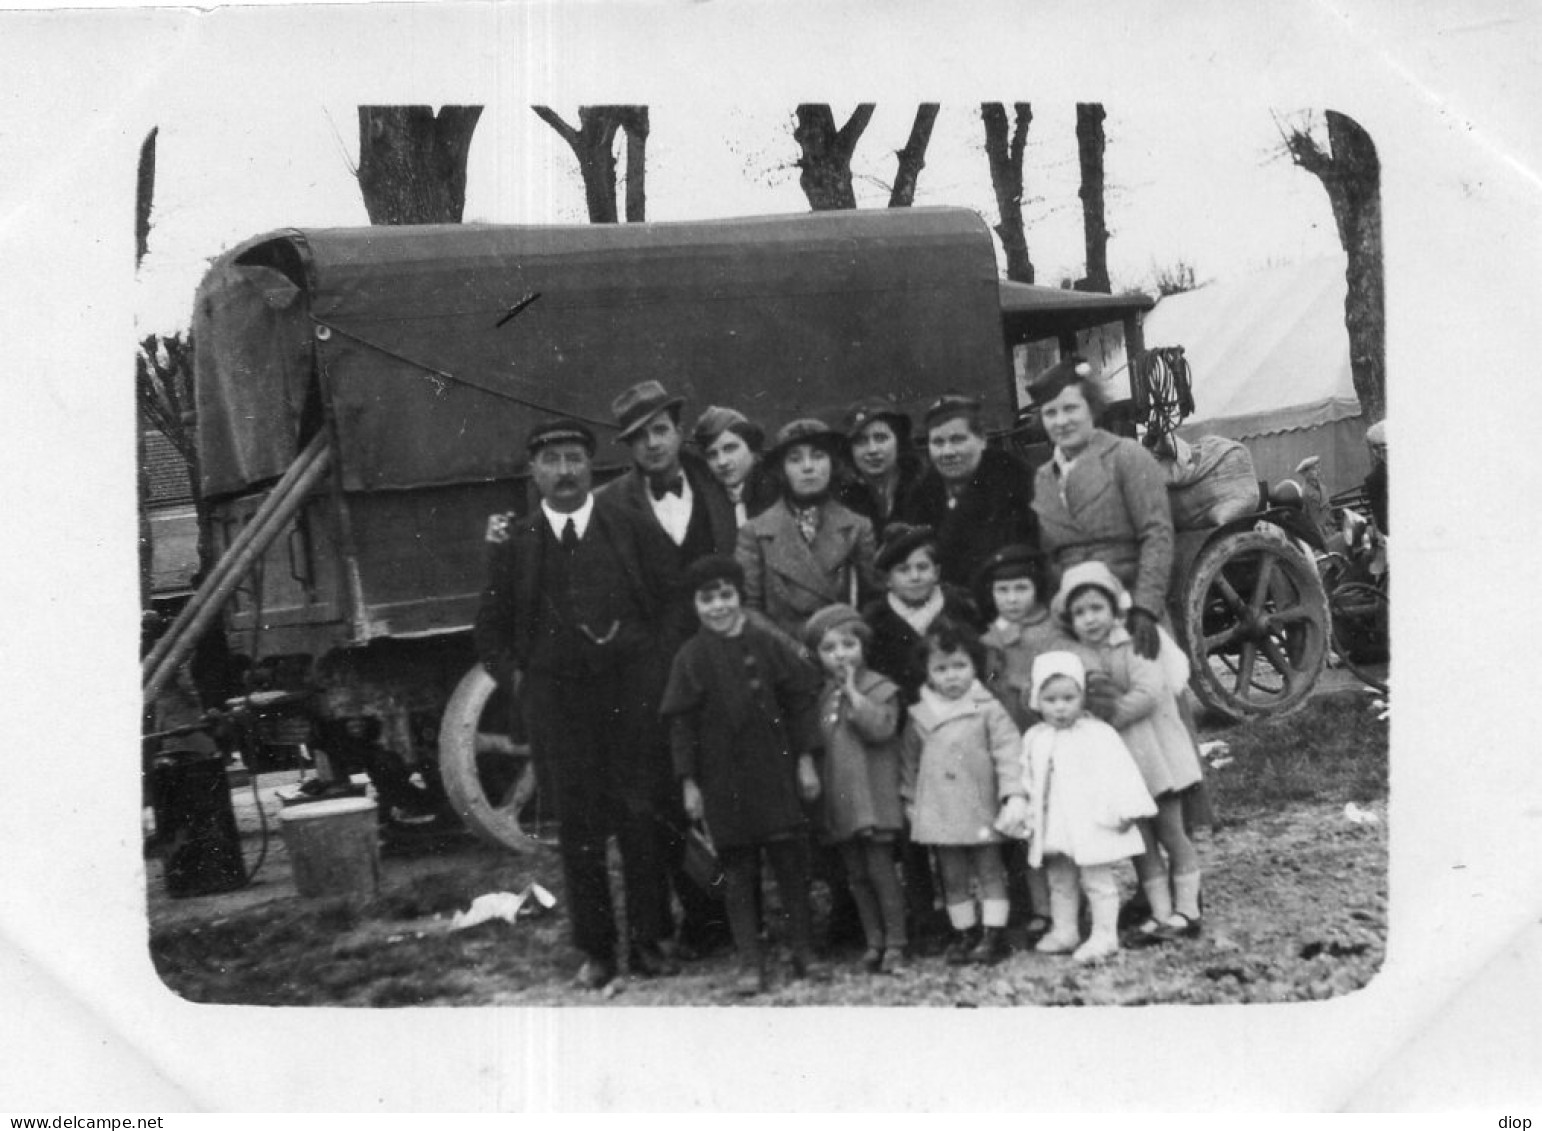 Photo Vintage Paris Snap Shop-famille Family Camion Truck - Eisenbahnen